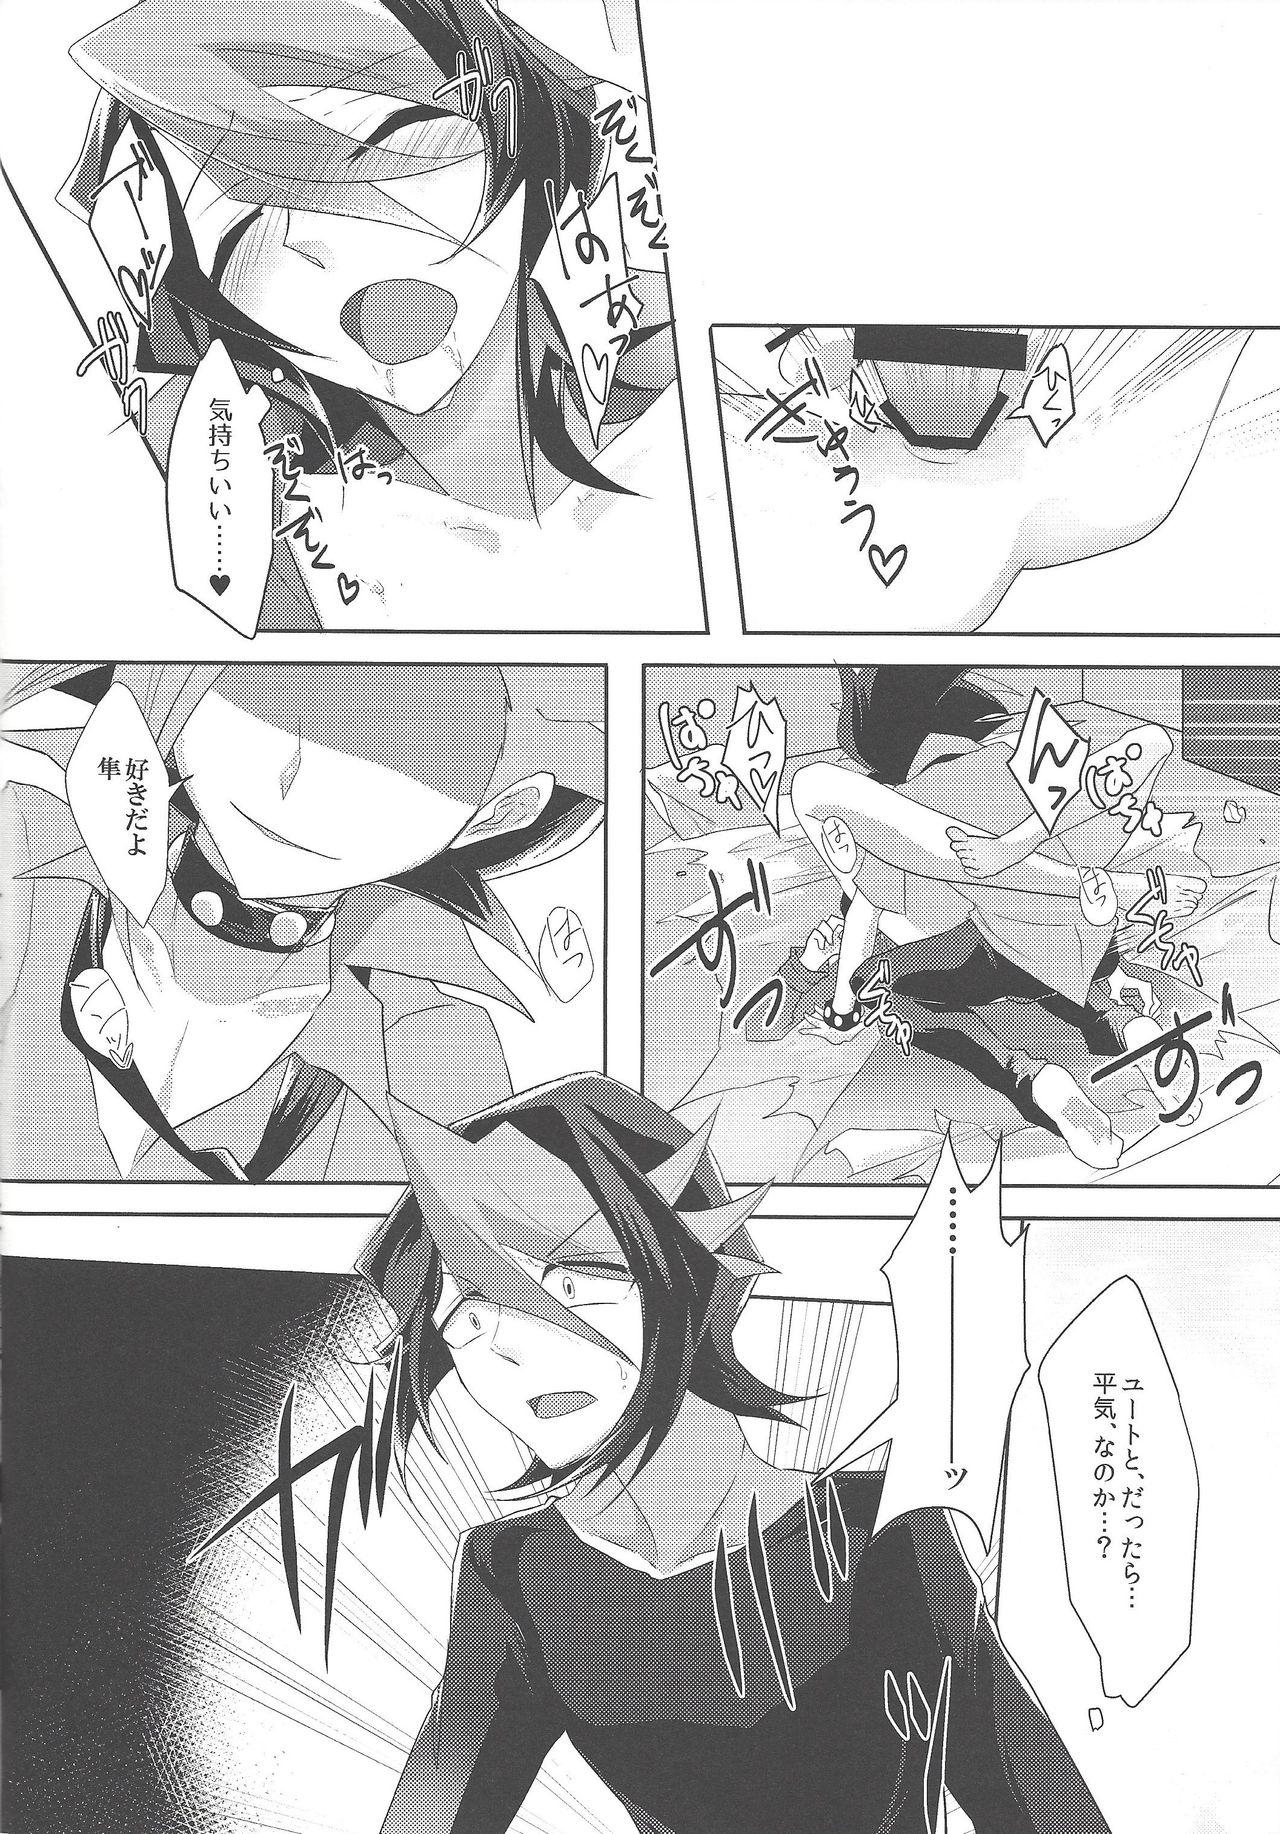 Uncensored Kimi to kokoro no risōkyō - Yu-gi-oh arc-v POV - Page 9